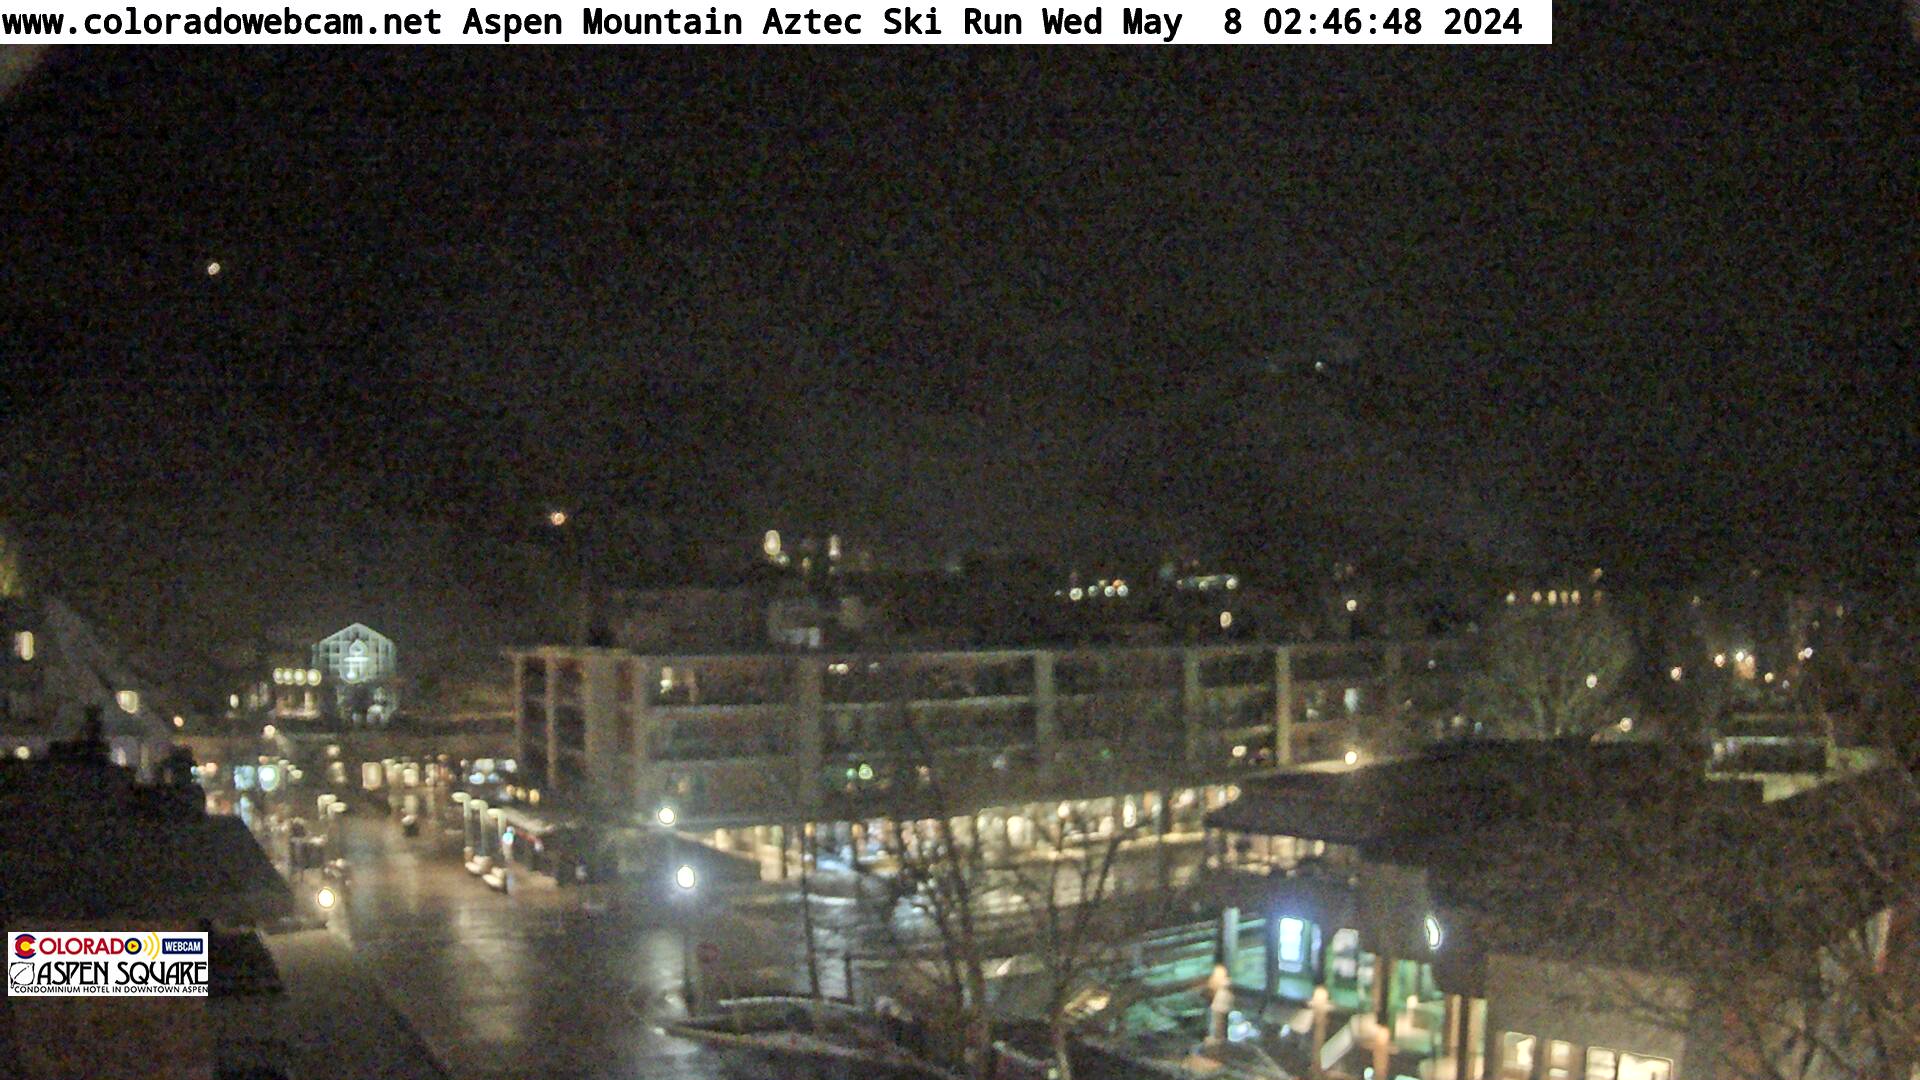 Aspen Axtec Shadow Mountain Mountain Webcam Aspen Square Produced by ColoradoWebCam